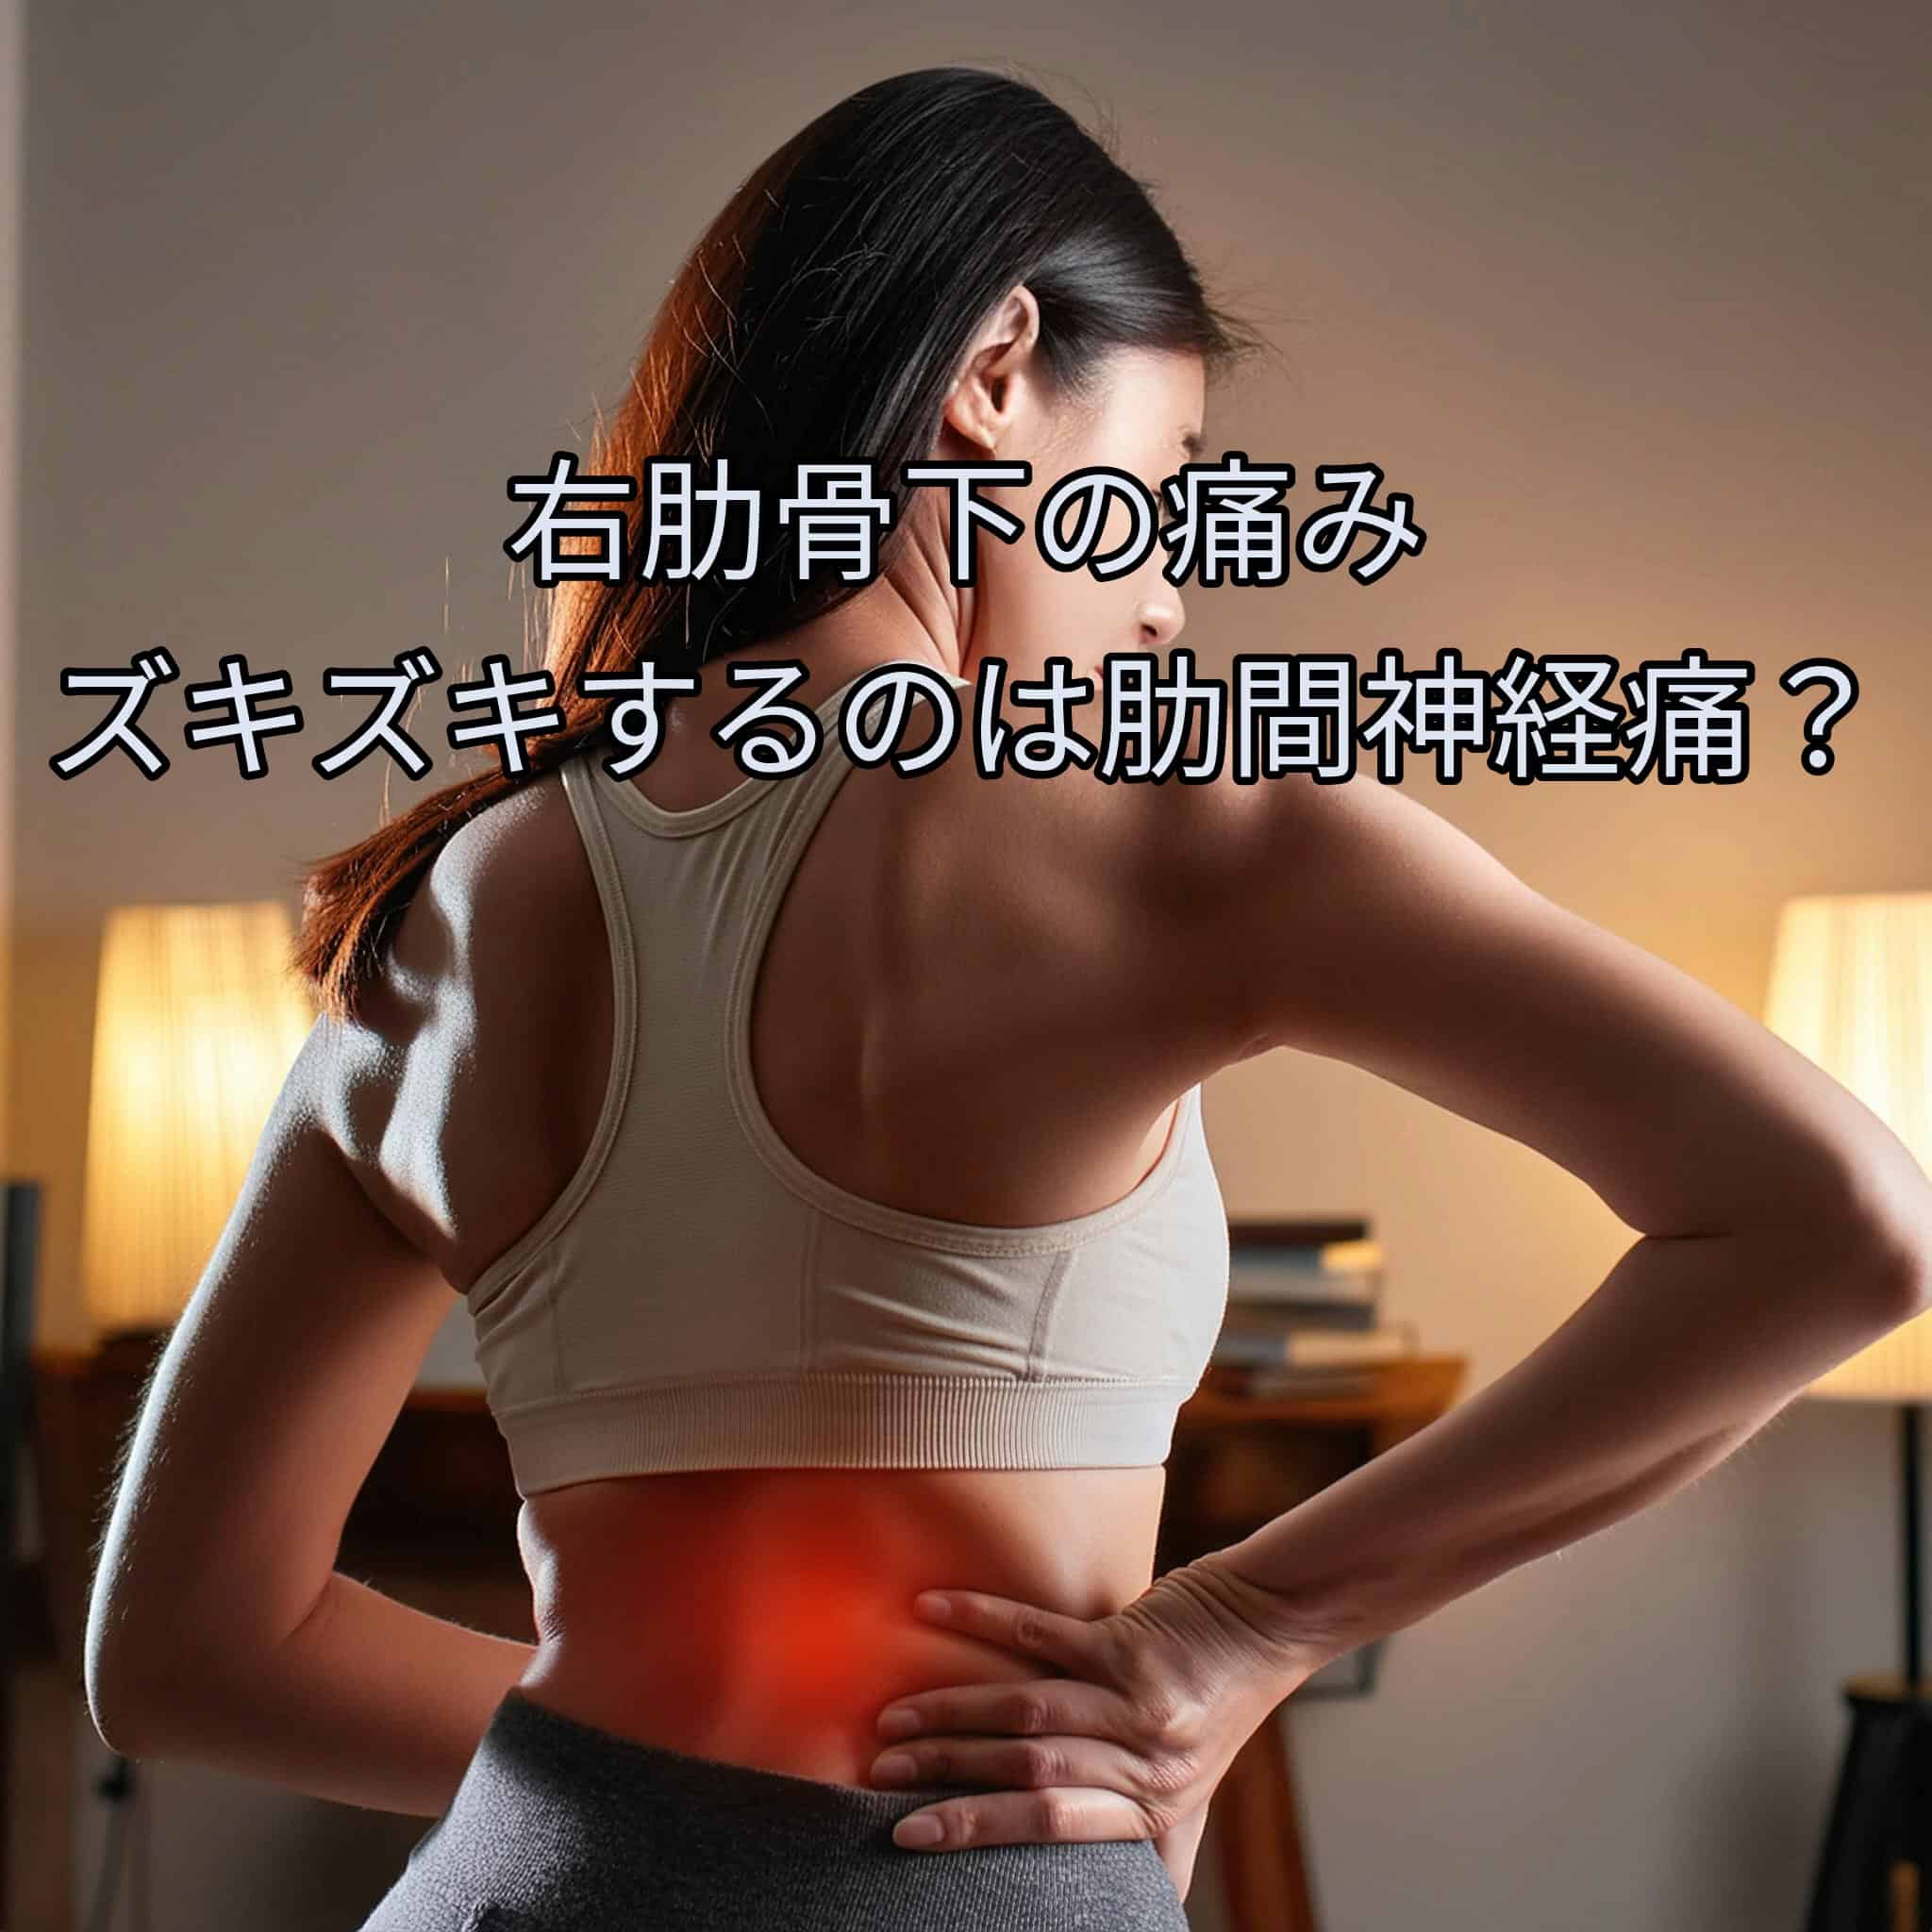 右肋骨下の痛み ズキズキするのは肋間神経痛？原因と対処法を詳しく解説